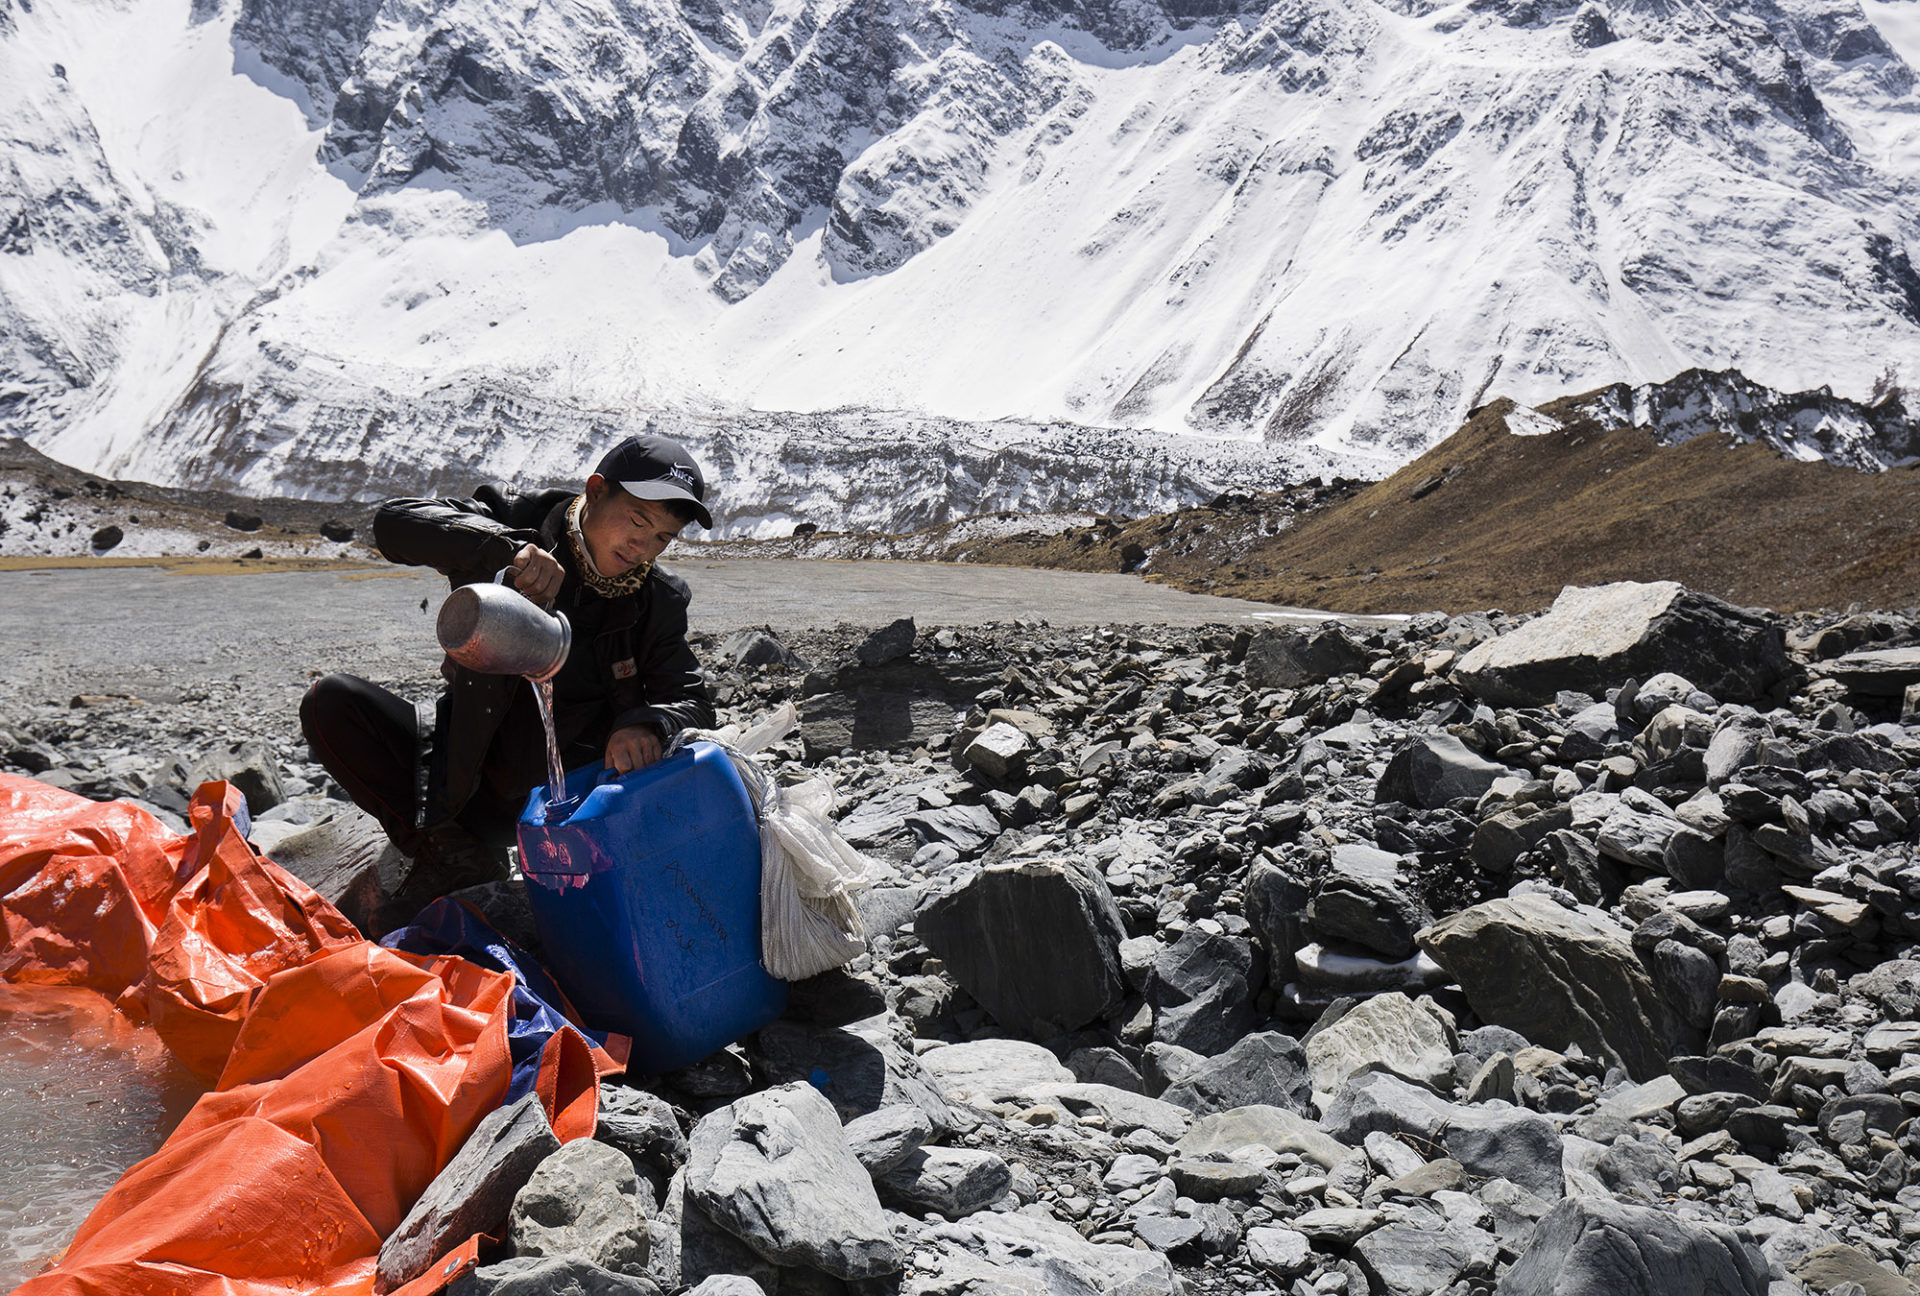 Sistema de recogida de agua creado por los Sherpas en el Annapurna 2